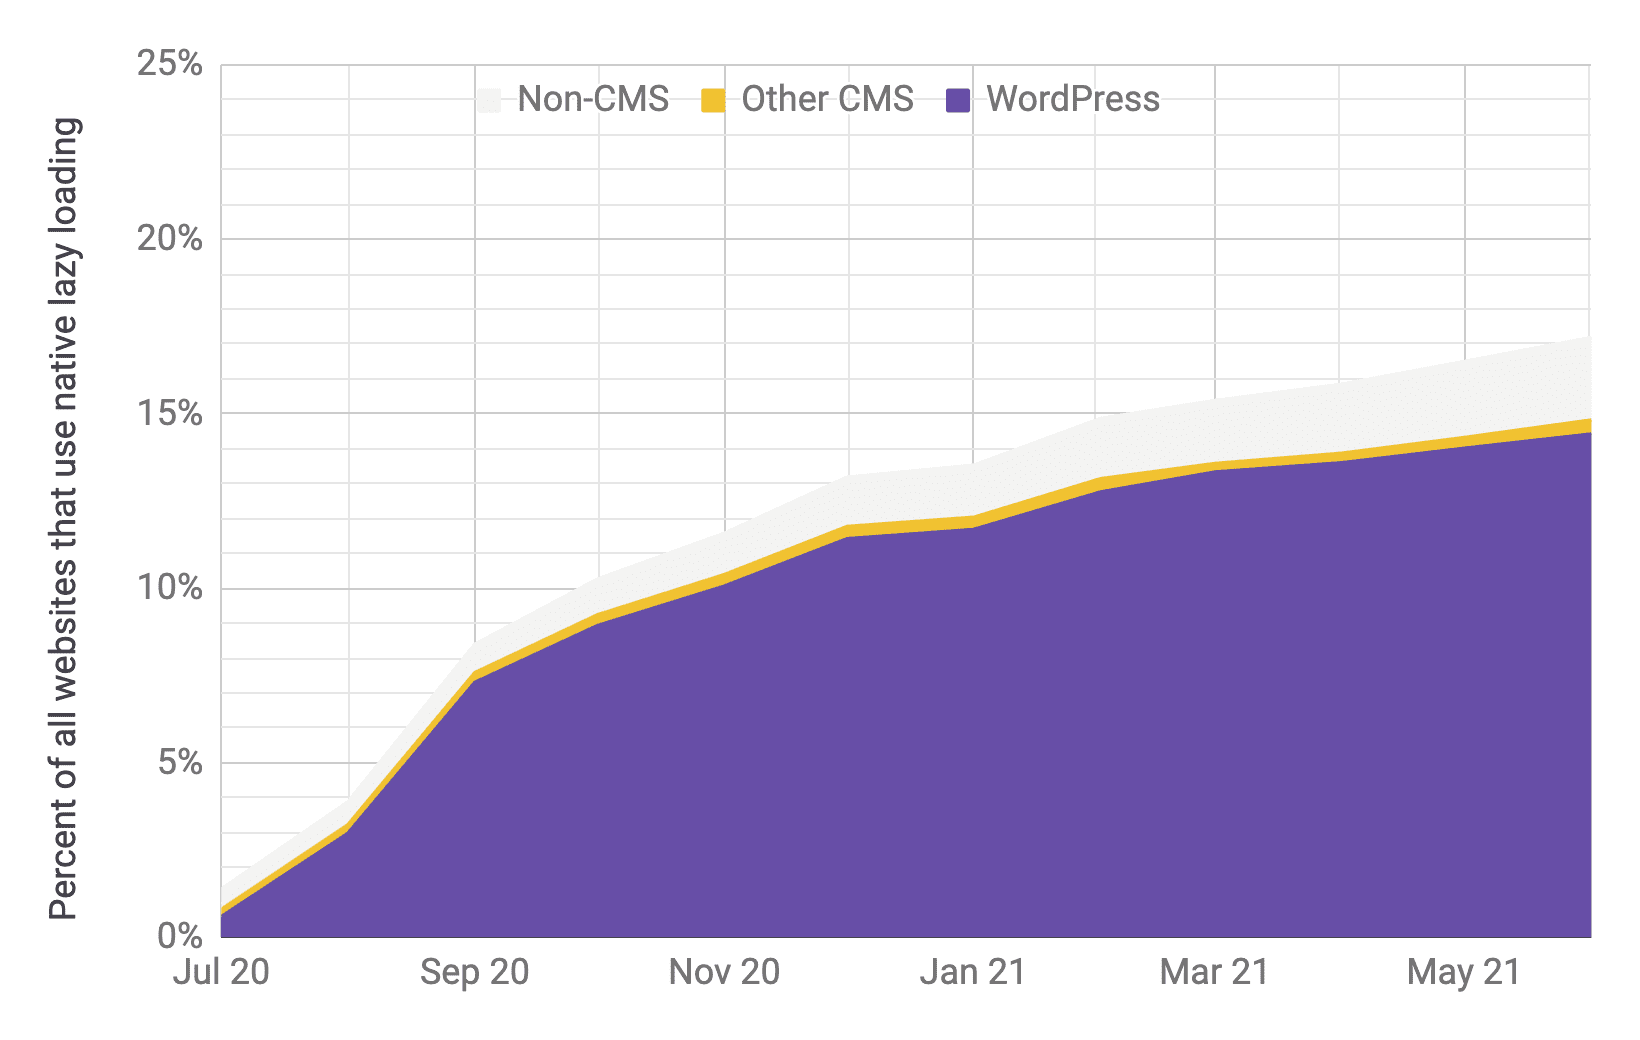 Diagram deret waktu yang menampilkan adopsi pemuatan lambat dengan WordPress sebagai pemain utama dibandingkan CMS dan non-CMS lainnya, dengan proporsi yang serupa dengan diagram sebelumnya. Total adopsi terbukti meningkat pesat dari 1% menjadi 17% dari Juli 2020 hingga Juni 2021.